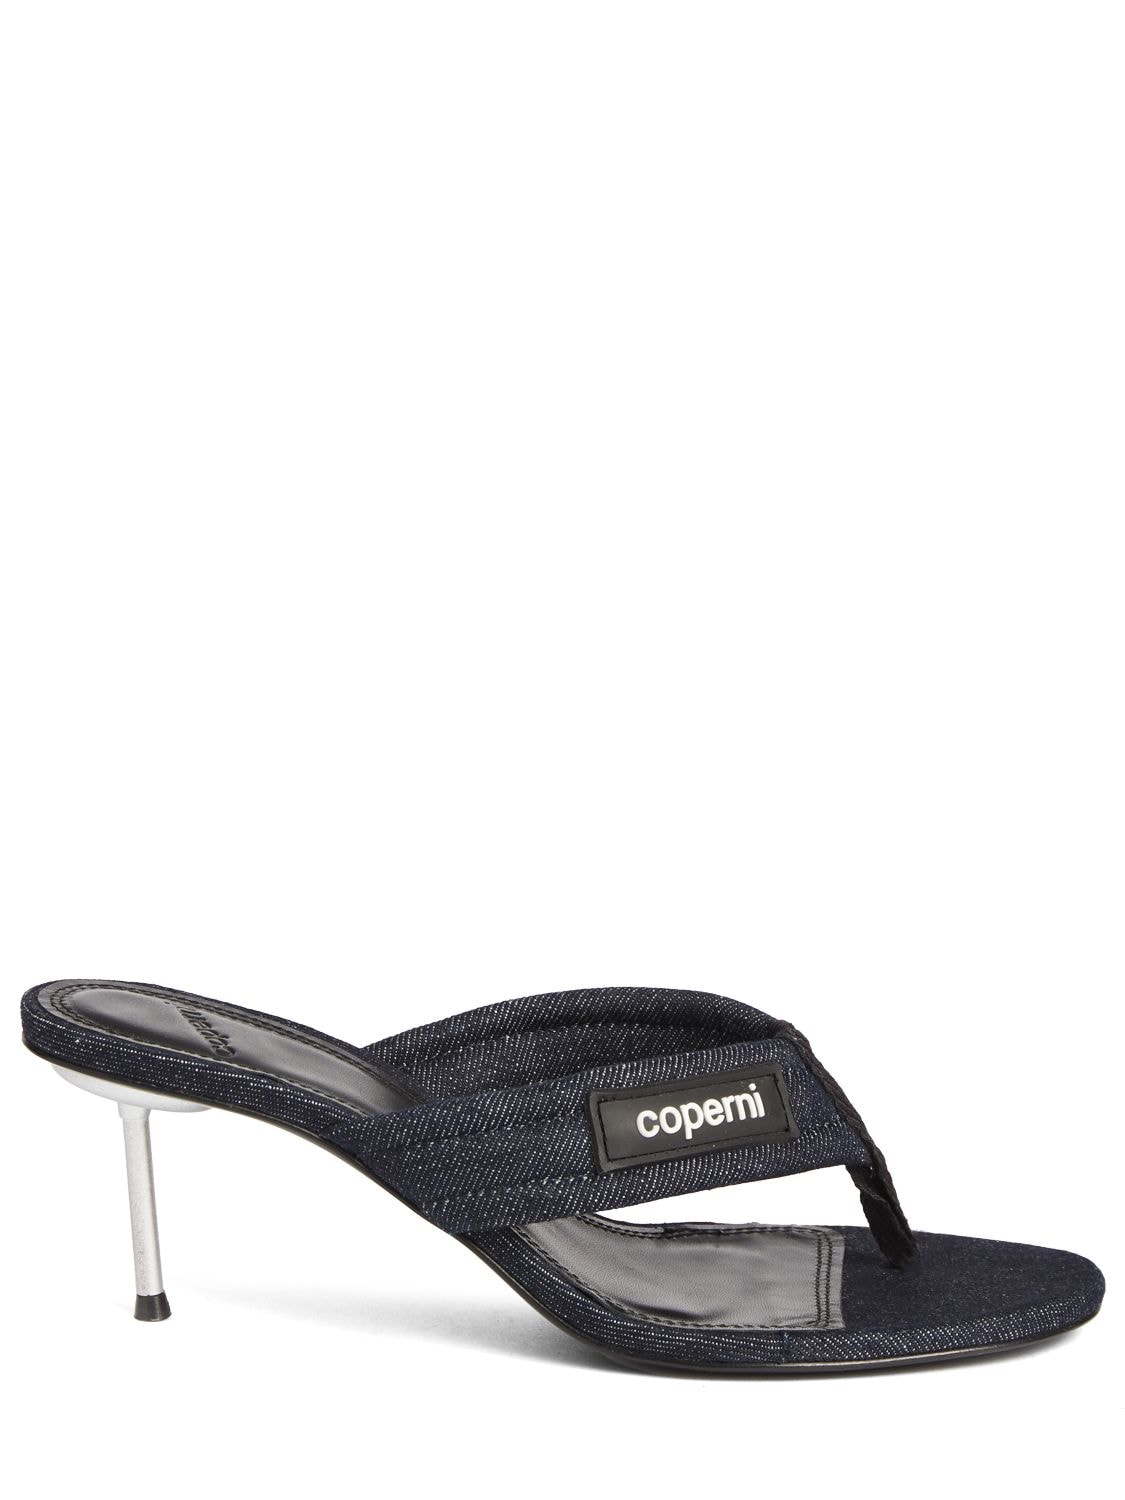 Mm Denim Branded Thong Sandal - COPERNI - Modalova